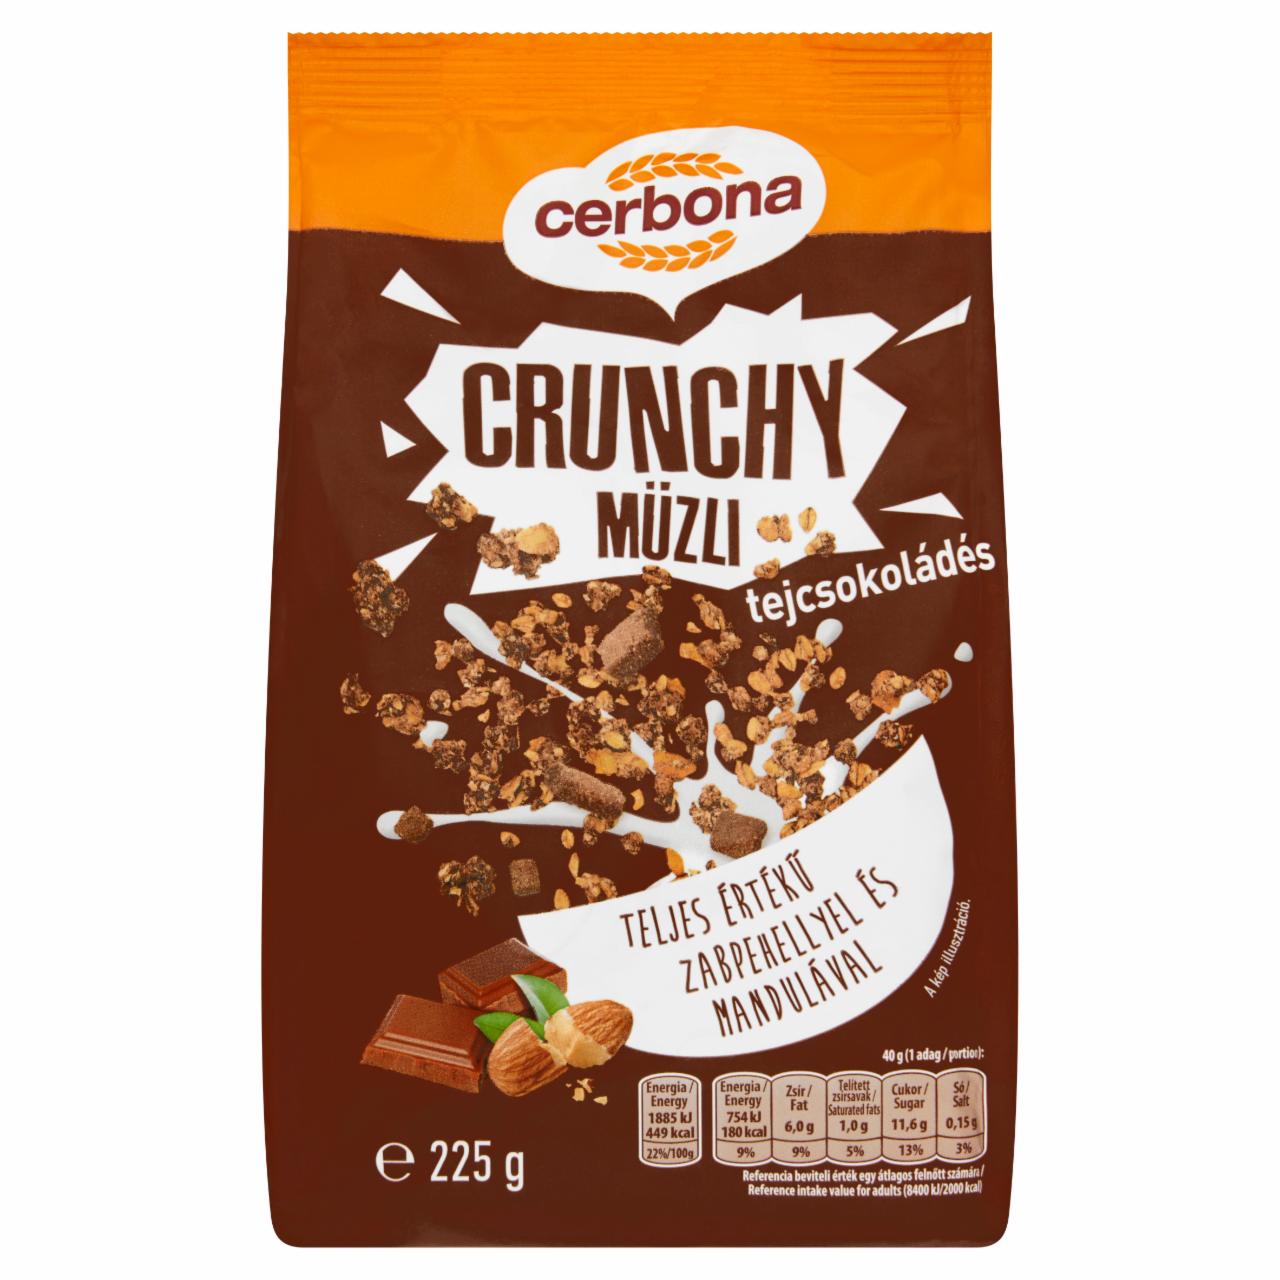 Képek - Cerbona Crunchy ropogós tejcsokoládés müzli 225 g